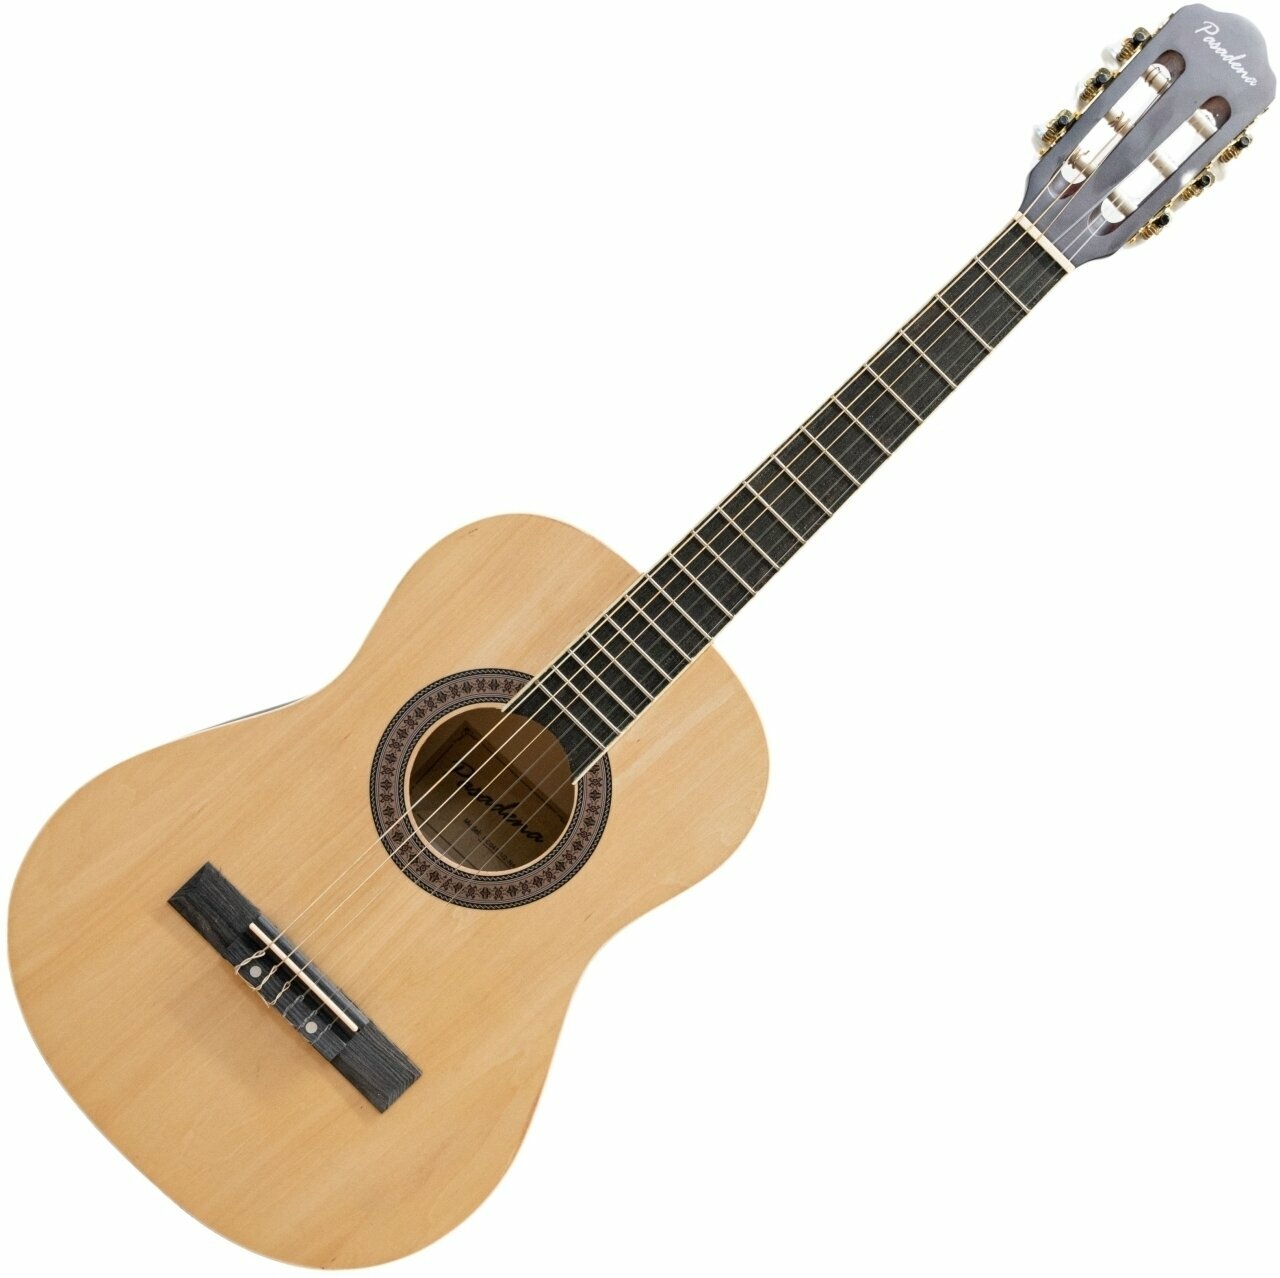 Classical guitar Pasadena SC041 1/2 Natural